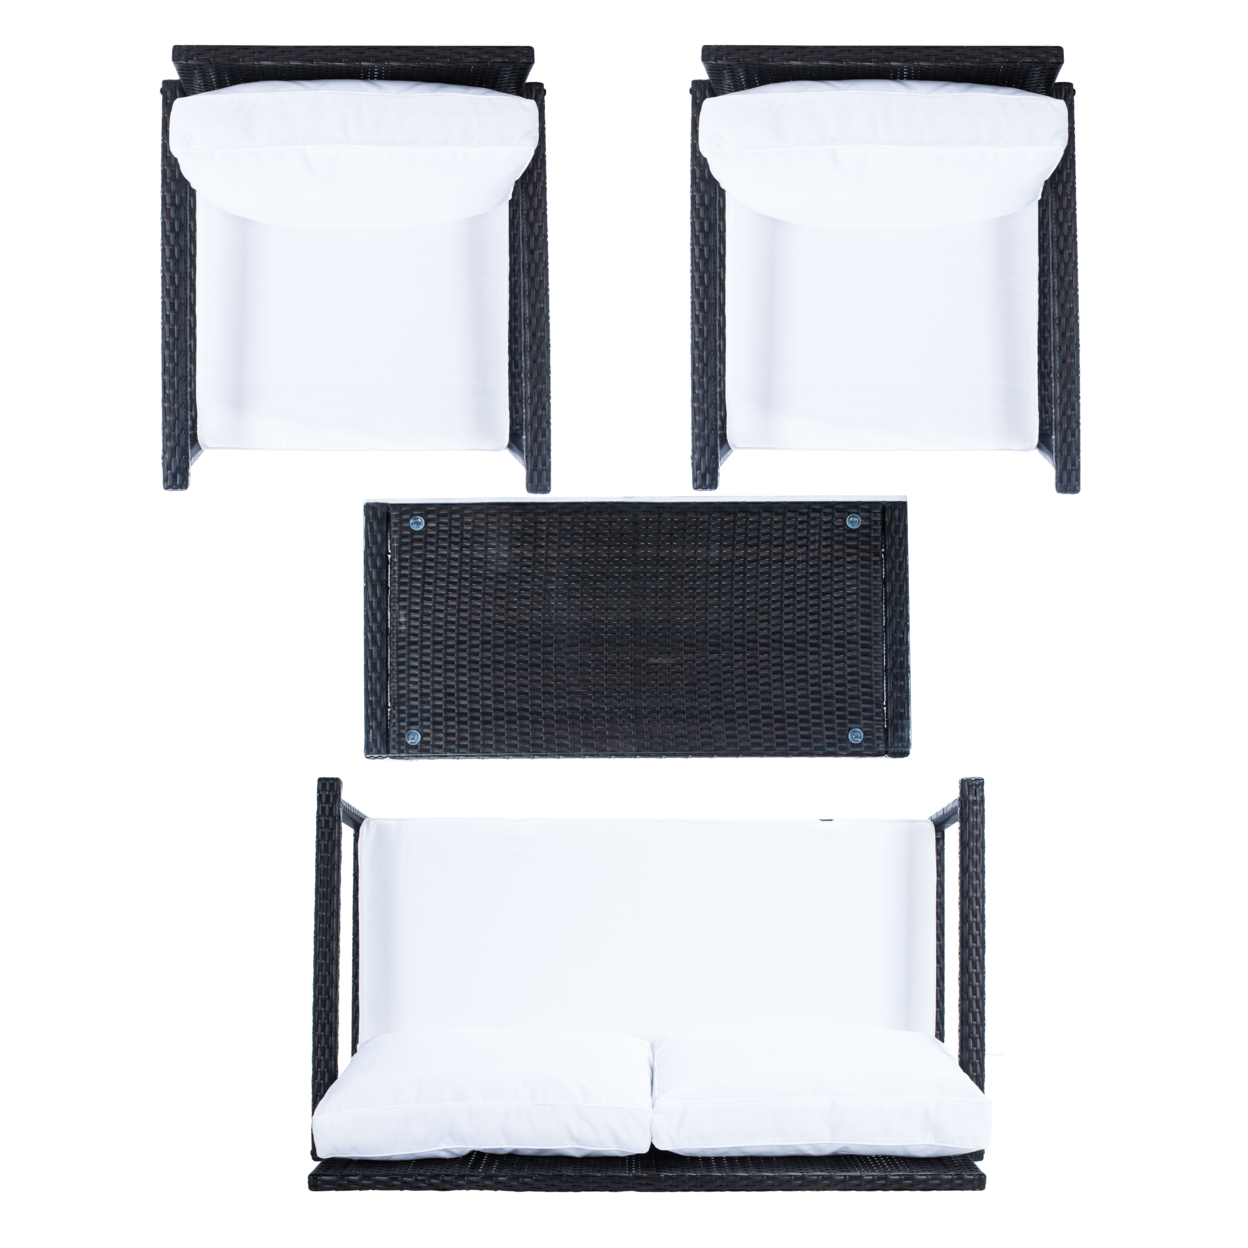 SAFAVIEH Outdoor Collection Garnen 4-Piece Patio Set Black/White Cushion